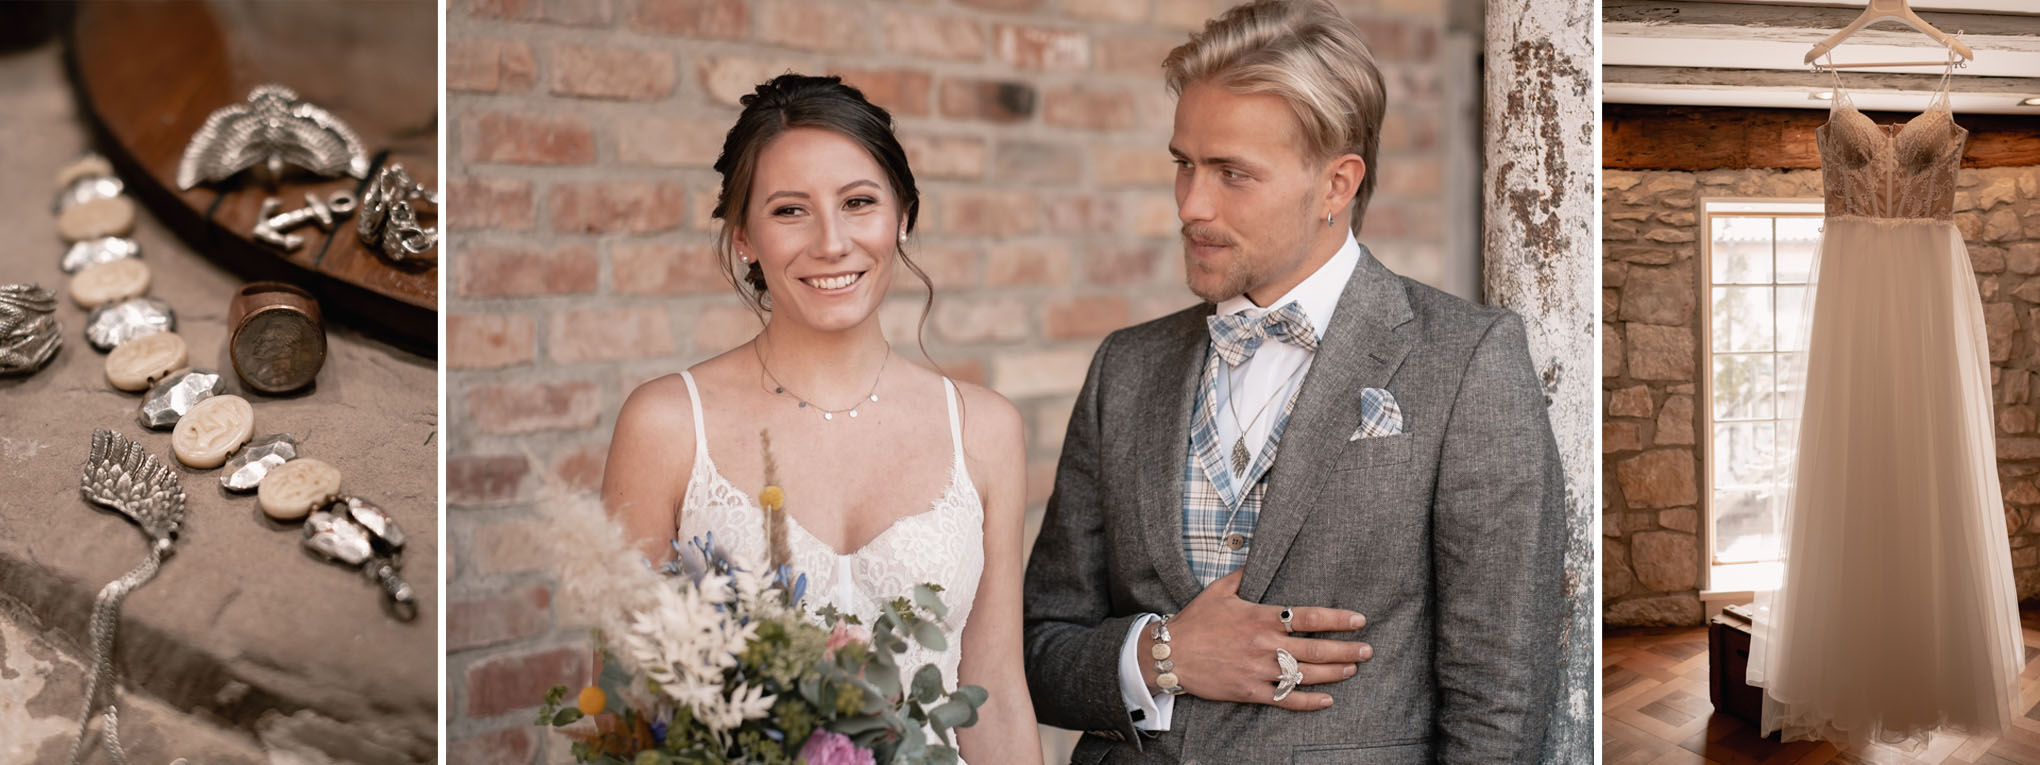 Boho Brautpaar in Brautkleid und Anzug von professionellem hochzeitsfotograf